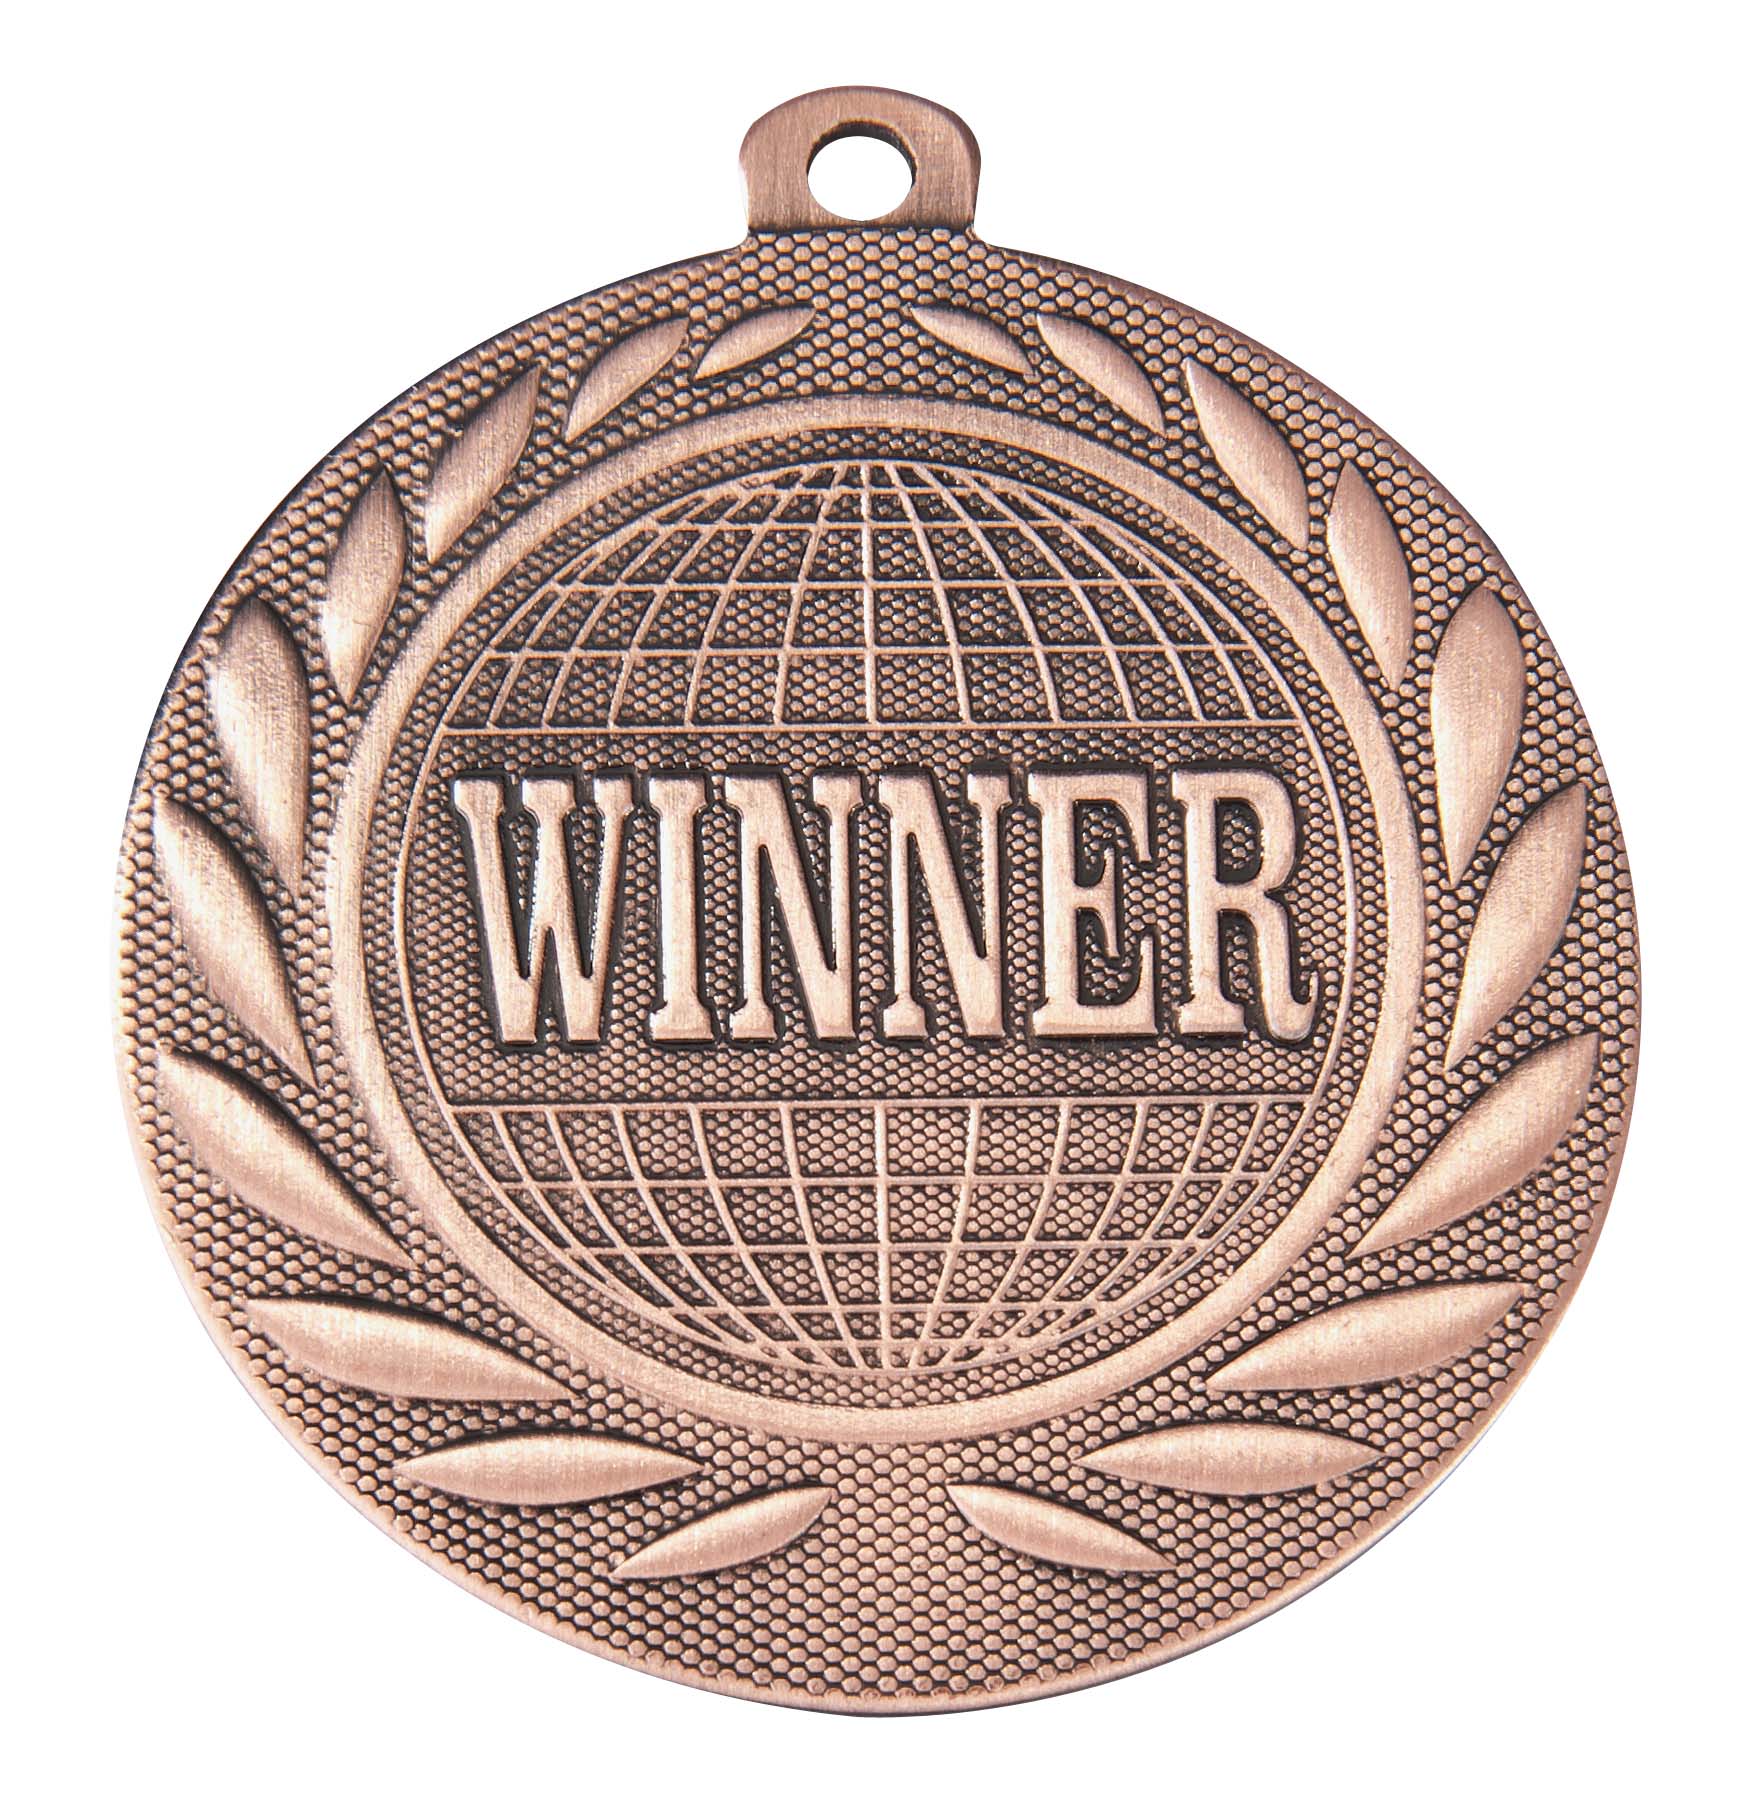 Winner-Medaille DI5000S inkl. Band und Beschriftung Bronze Fertig montiert gegen Aufpreis